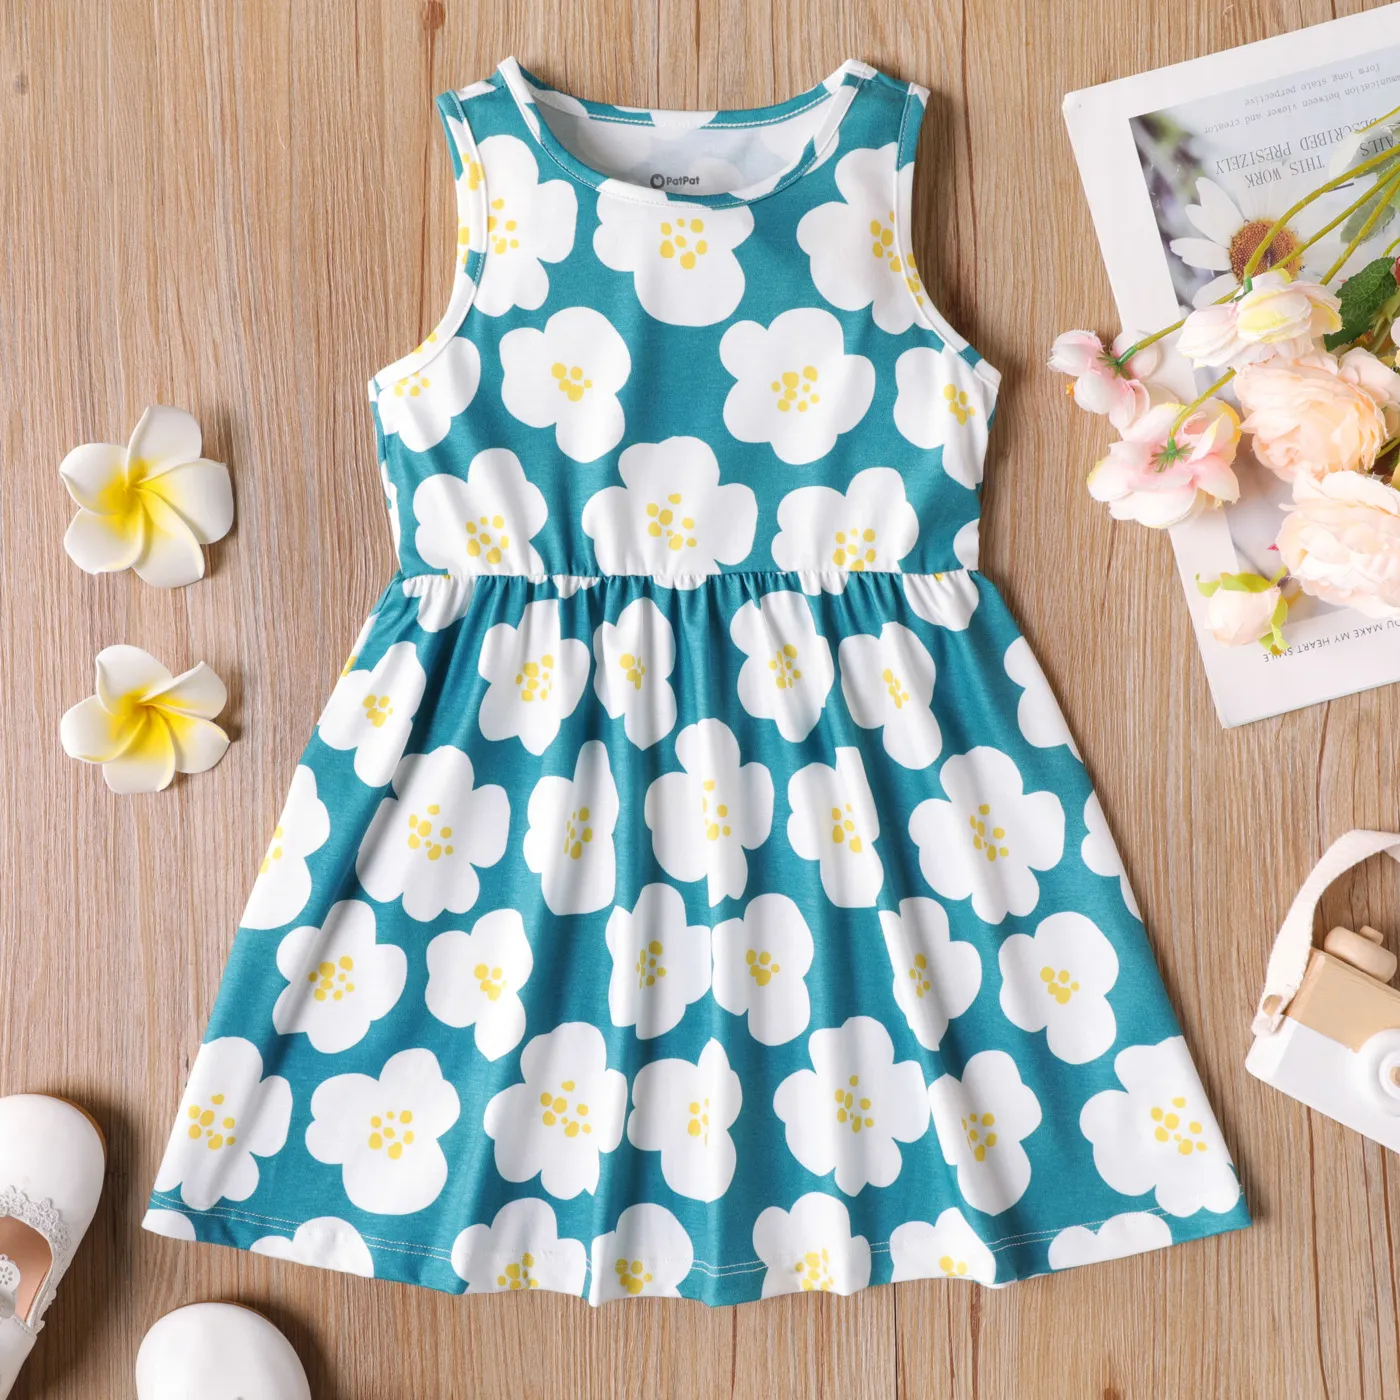 Toddler/Kid Girl Heart Print/Polka dots Sleeveless Dress